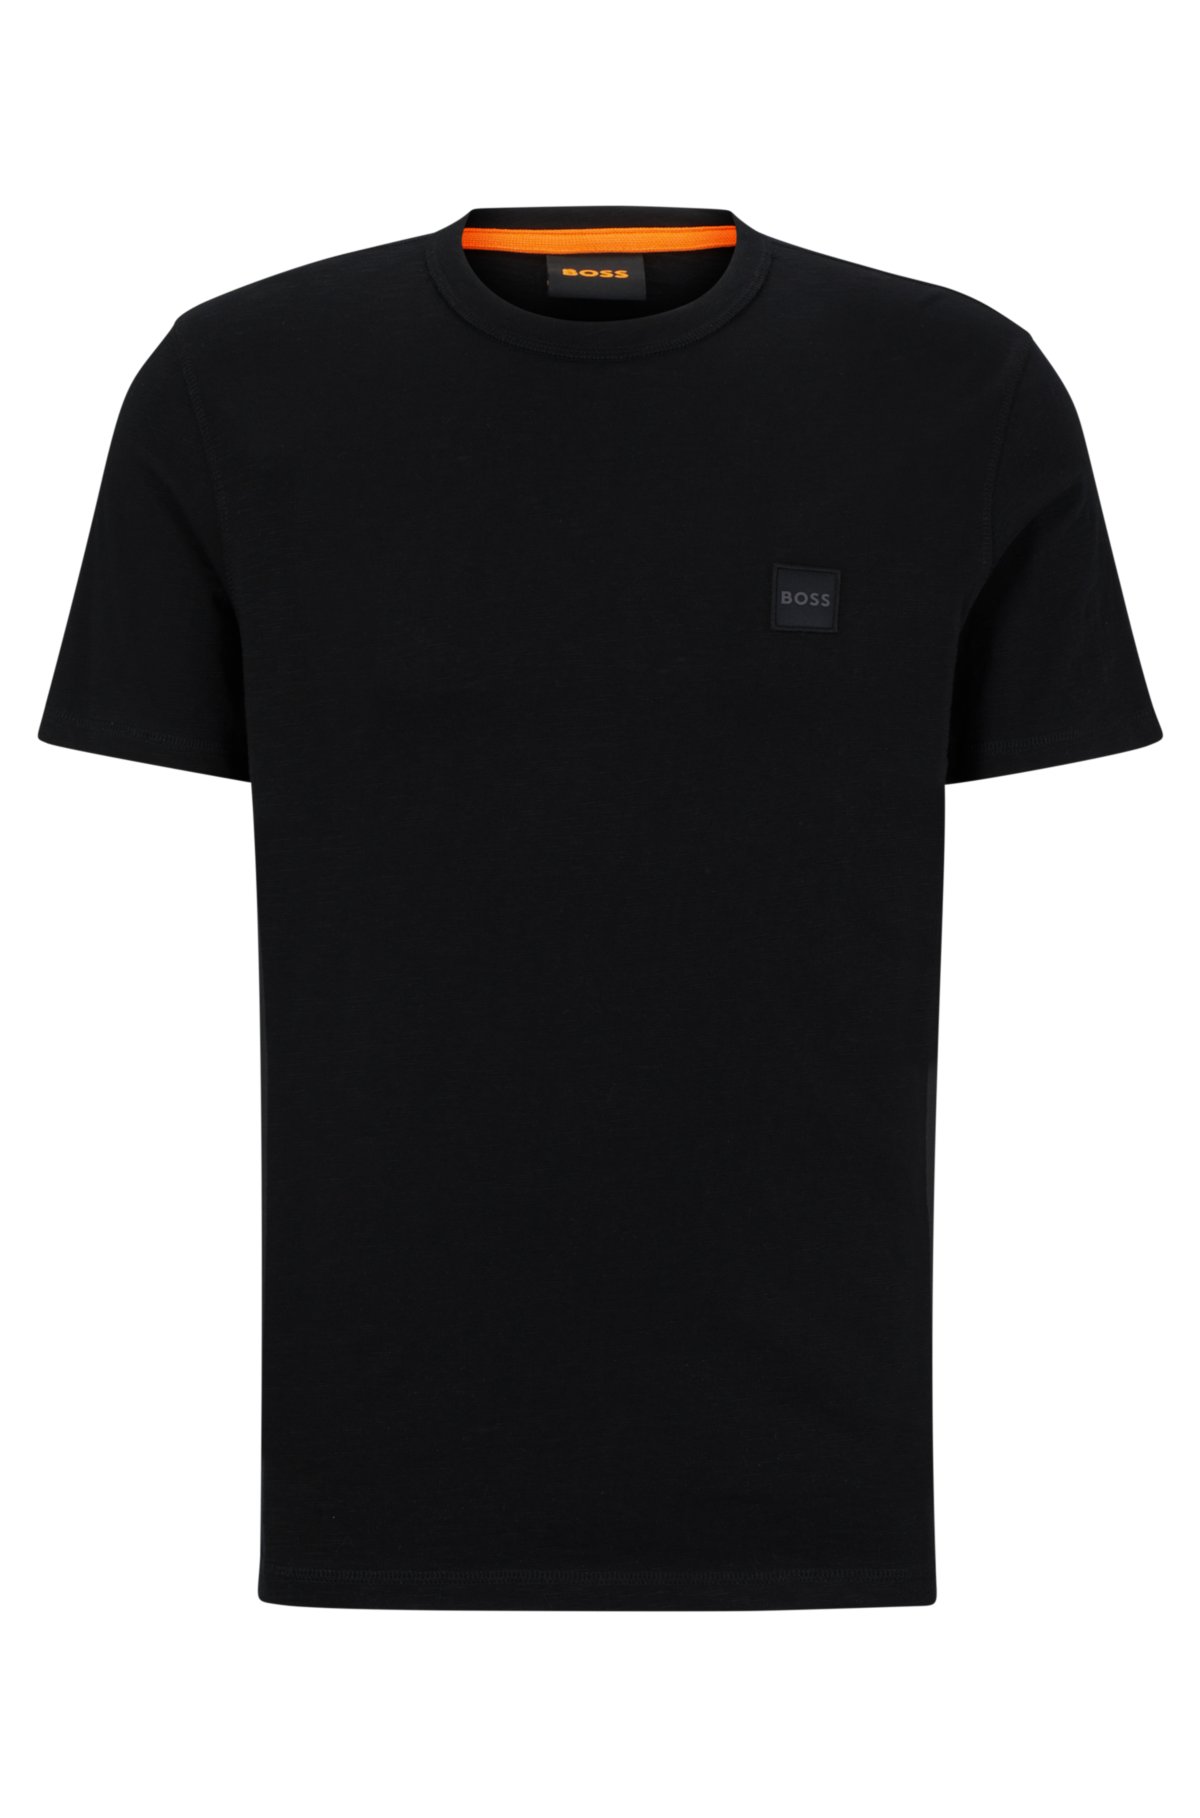 BOSS - Camiseta regular fit en punto de algodón con parche de logo